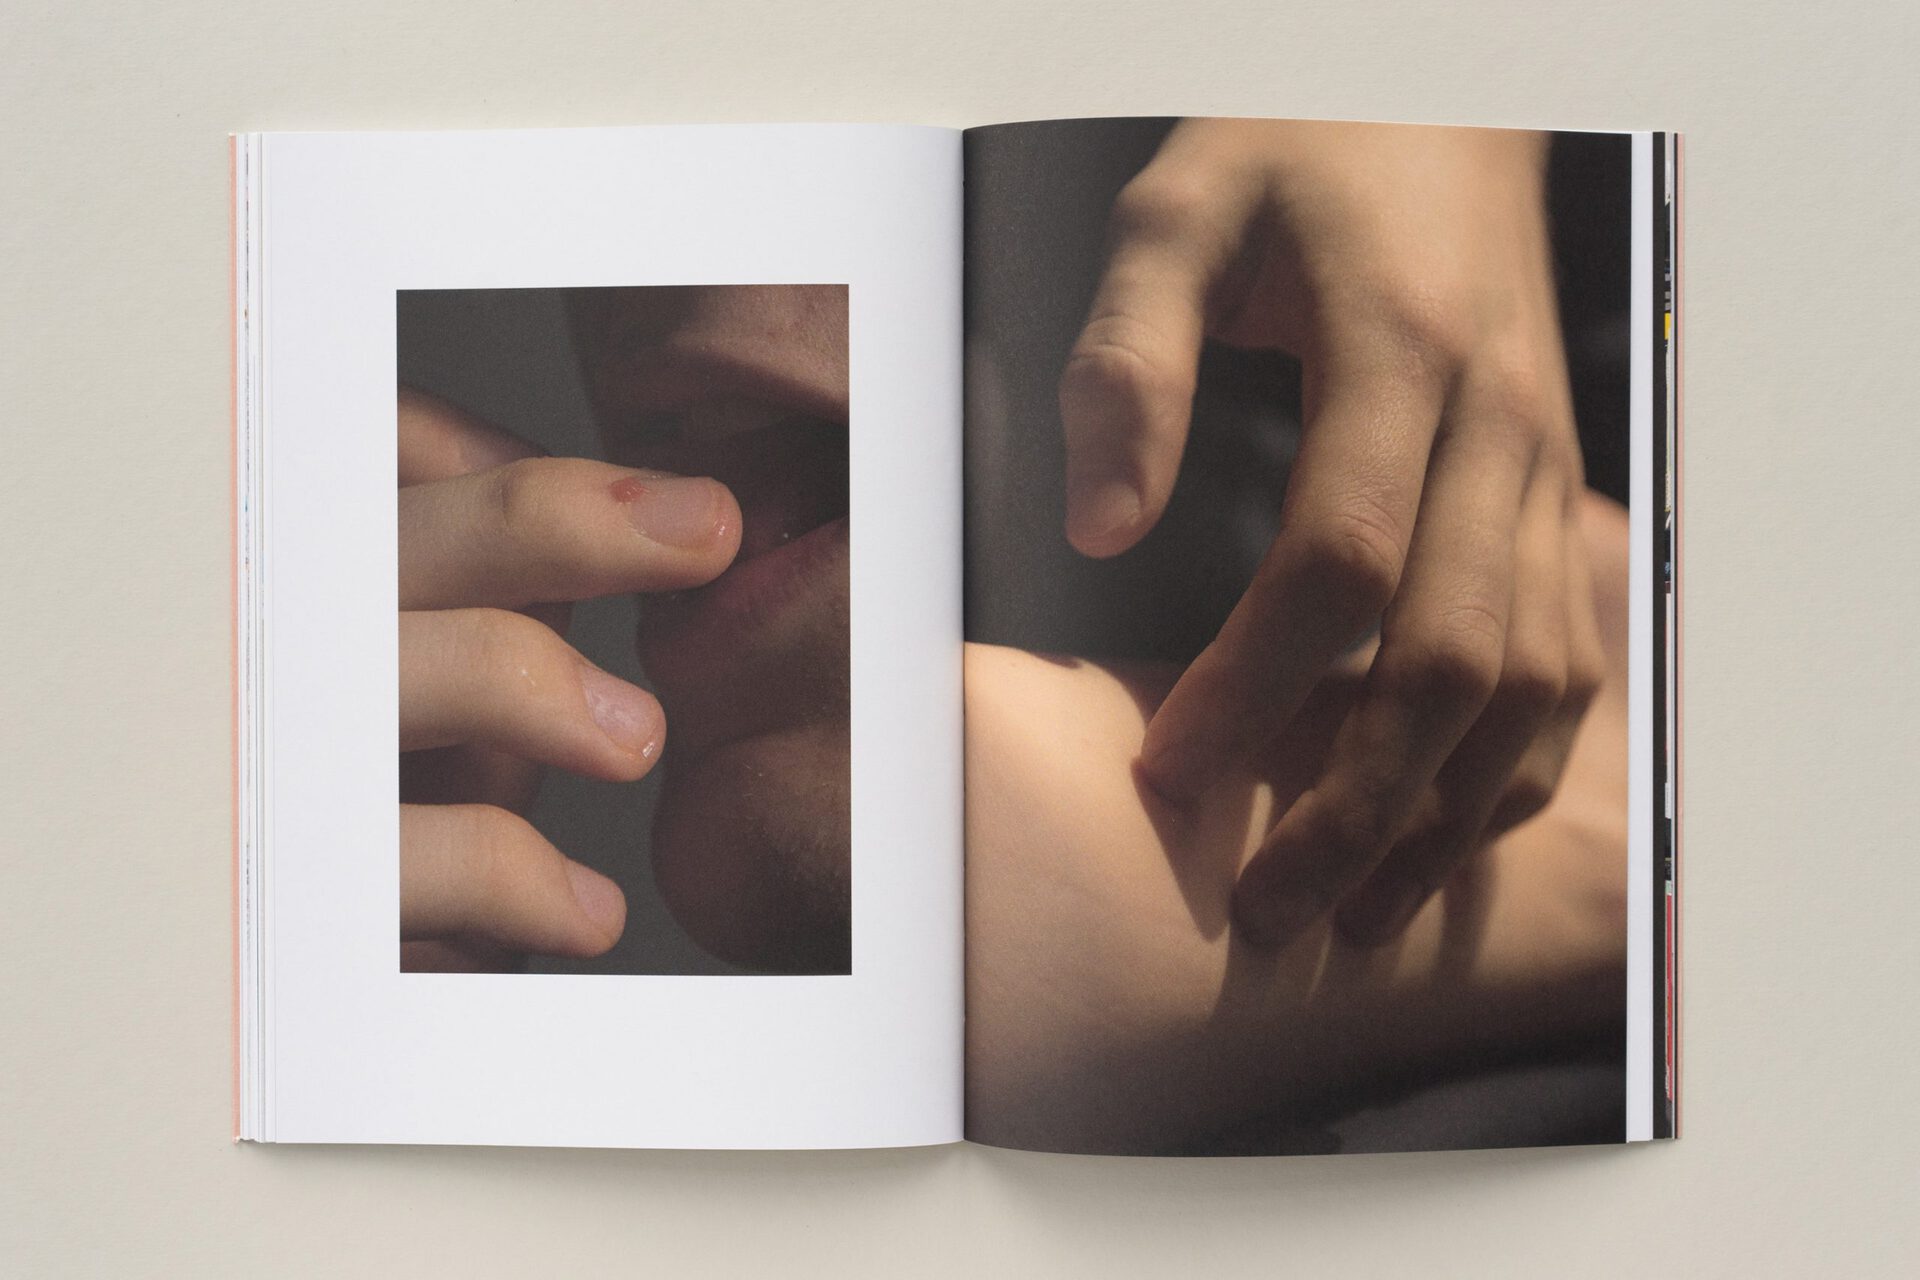 Anaïs Horn “Die Hand voller Stunden, so kamst du zu mir”, Edition Camera Austria, 2021. Texts by Attilia Fattori Franchini and Wendy Vogel.